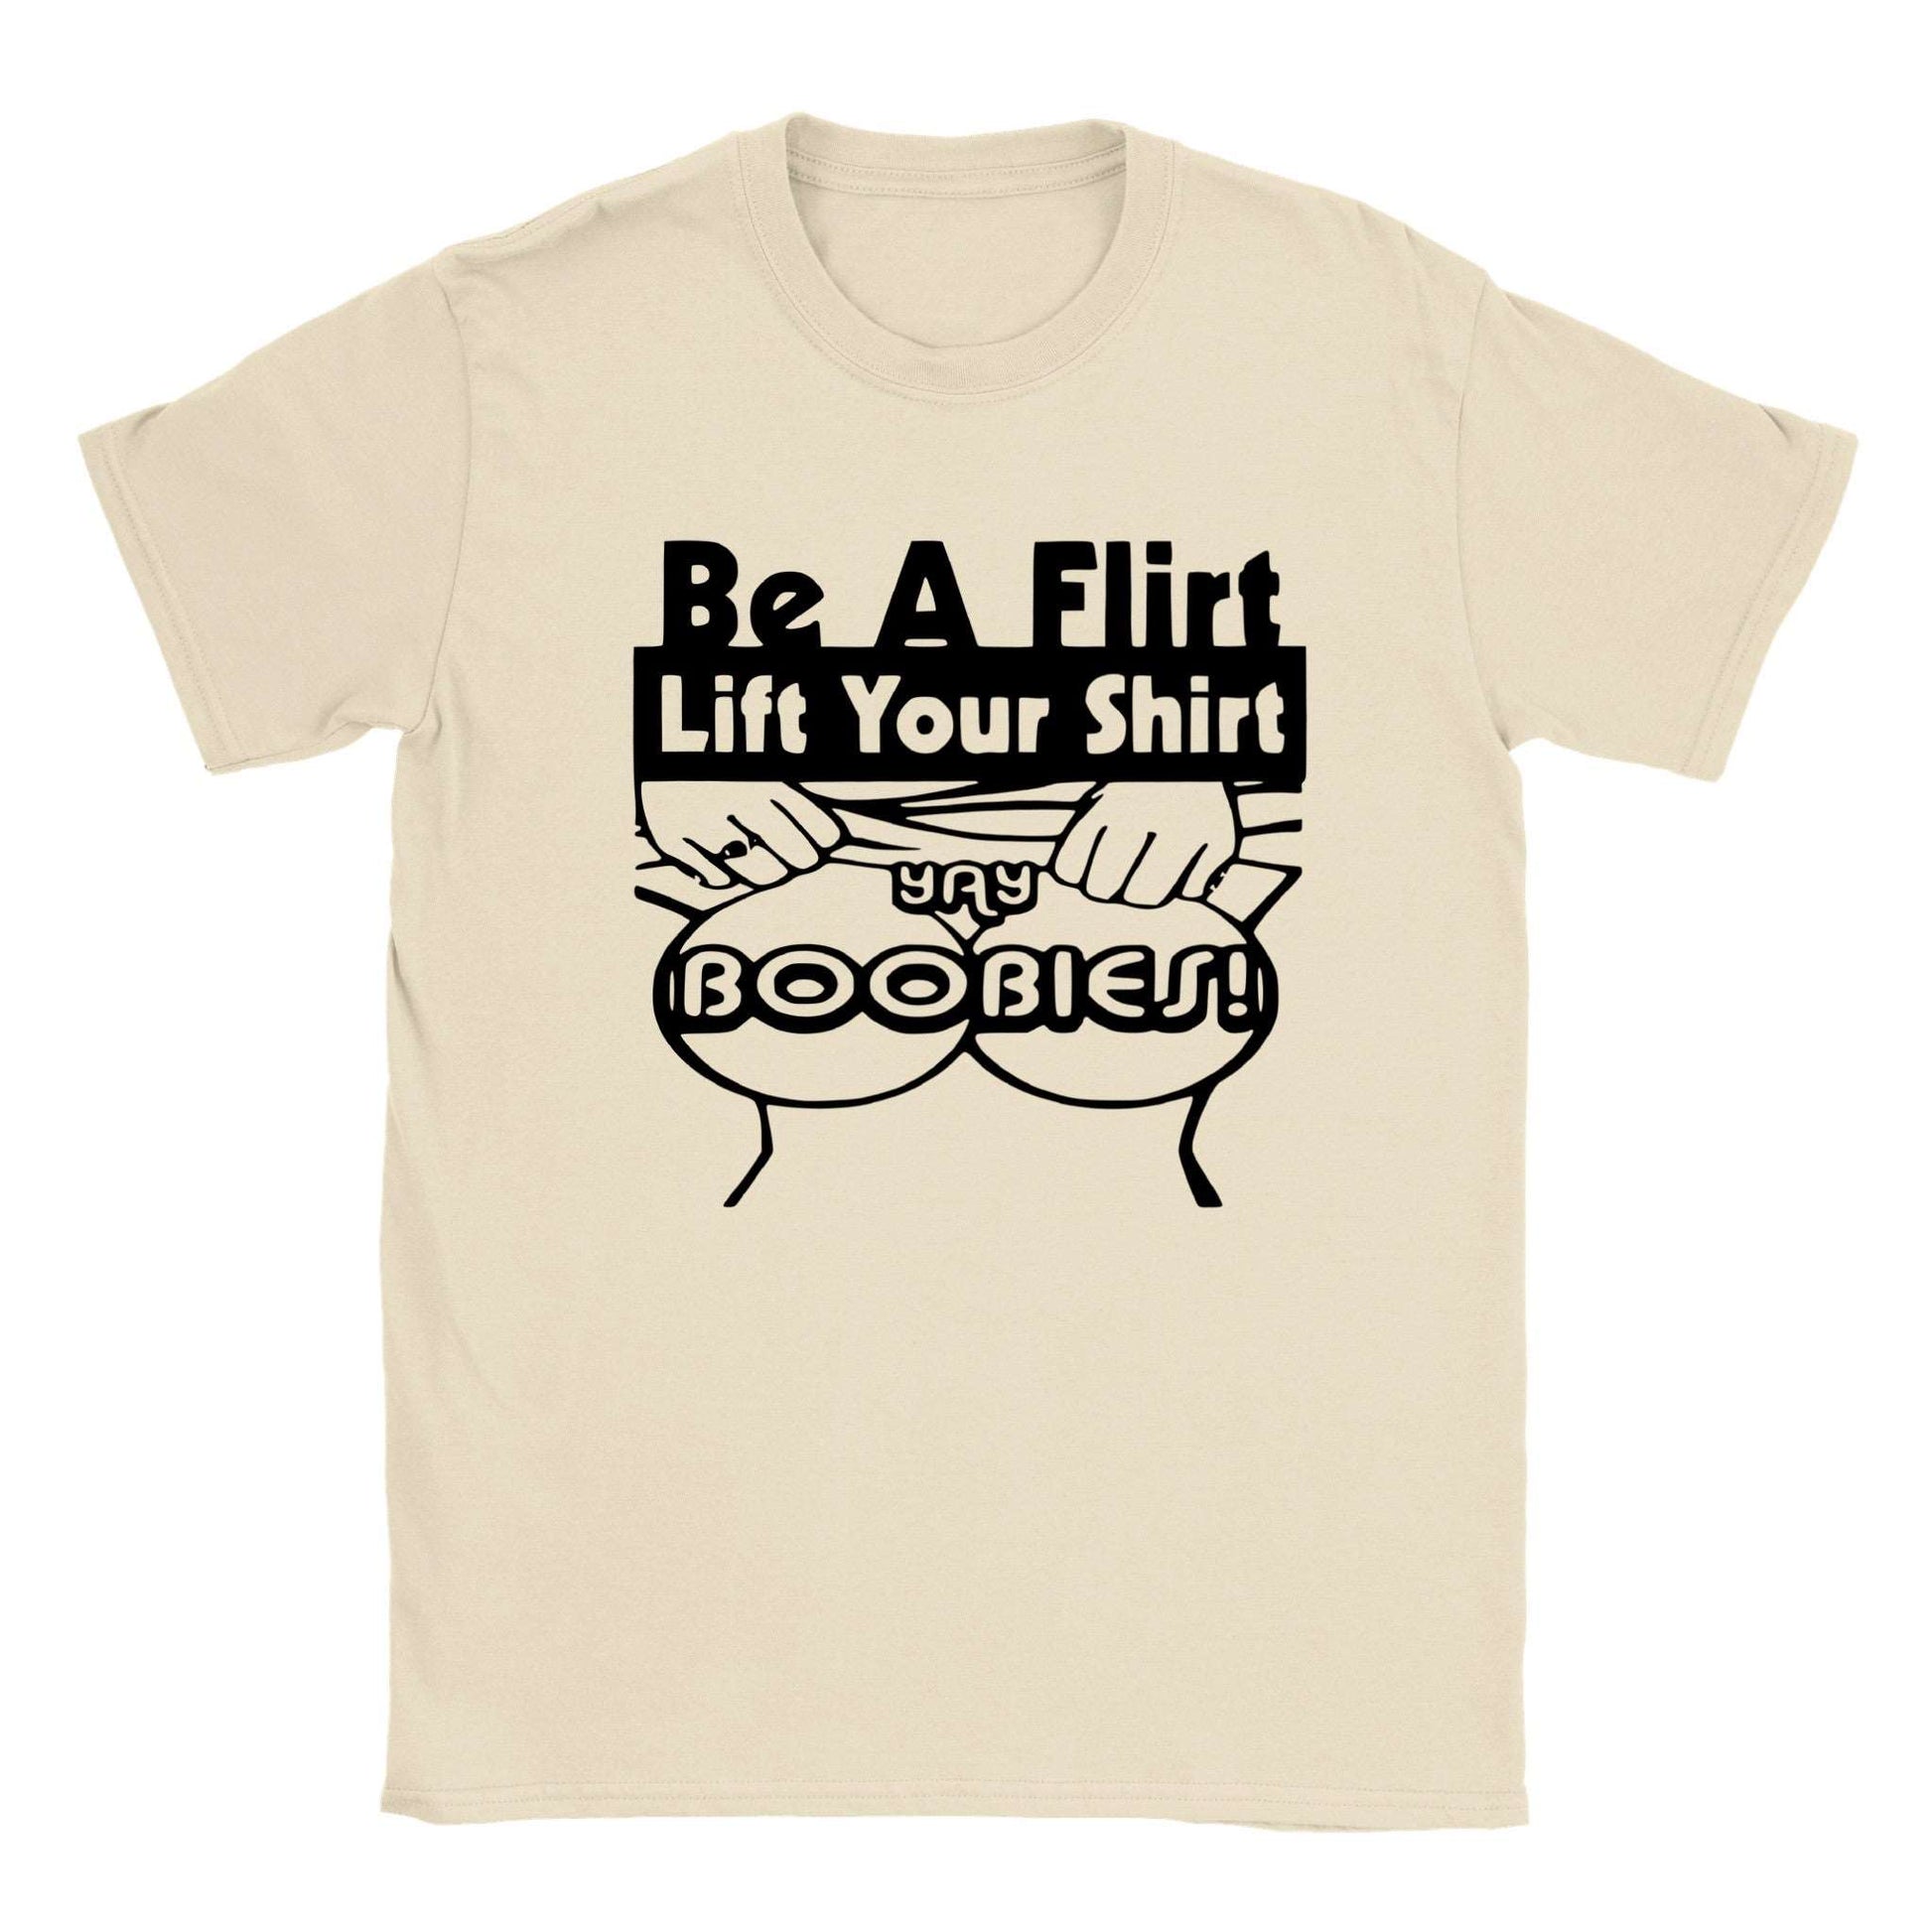 Be A Flirt, Lift Your Shirt - Classic Unisex Crewneck T-shirt - Mister Snarky's